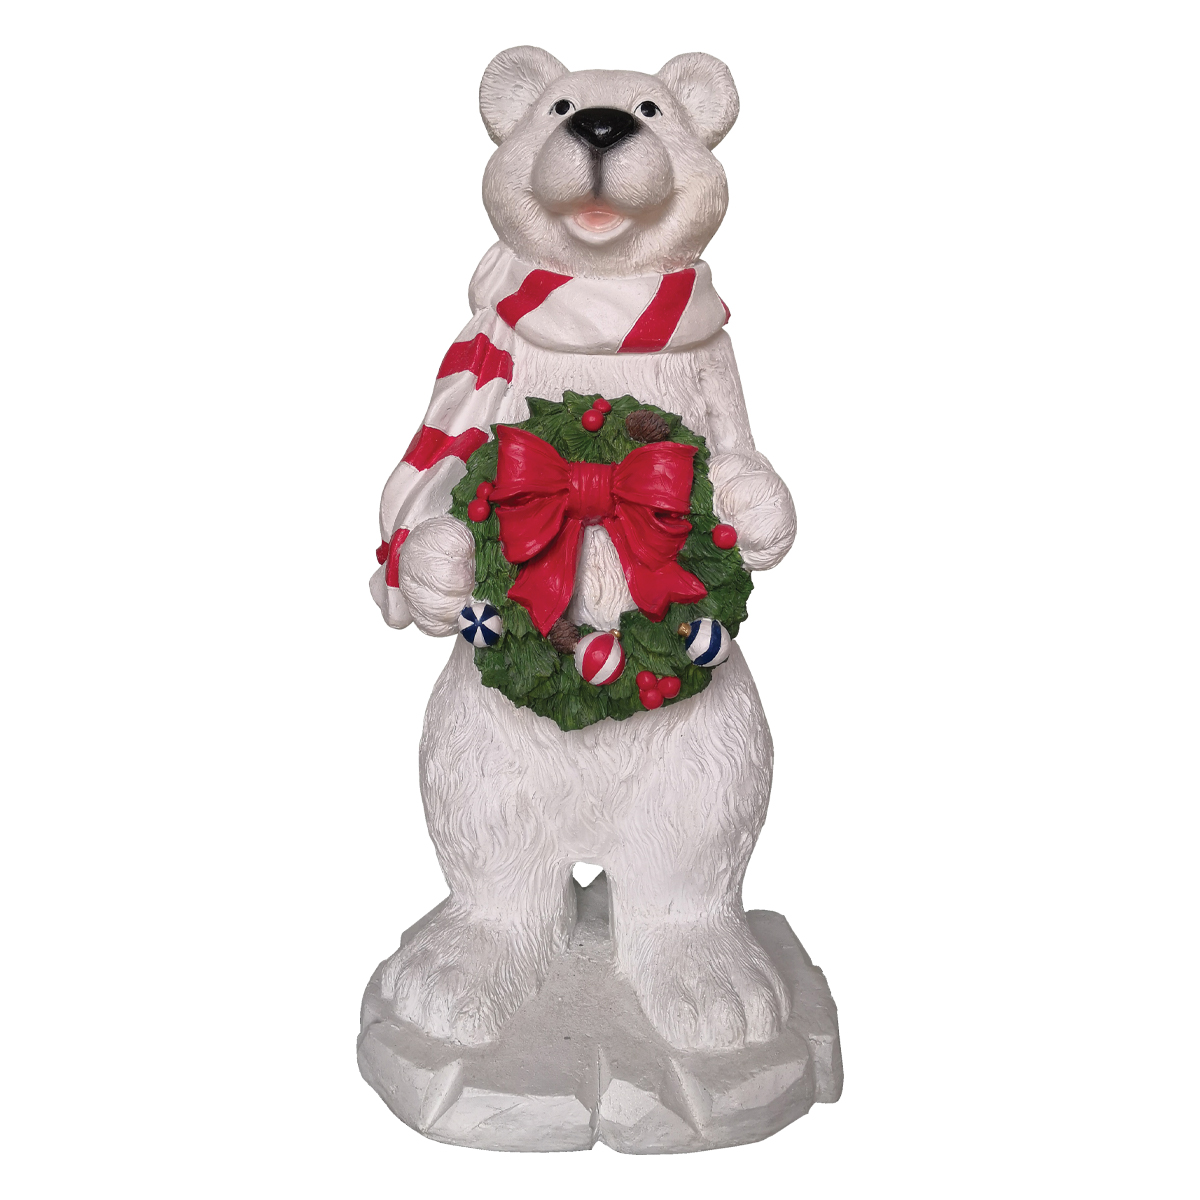 Polar Bear with Wreath - 4ft Tall